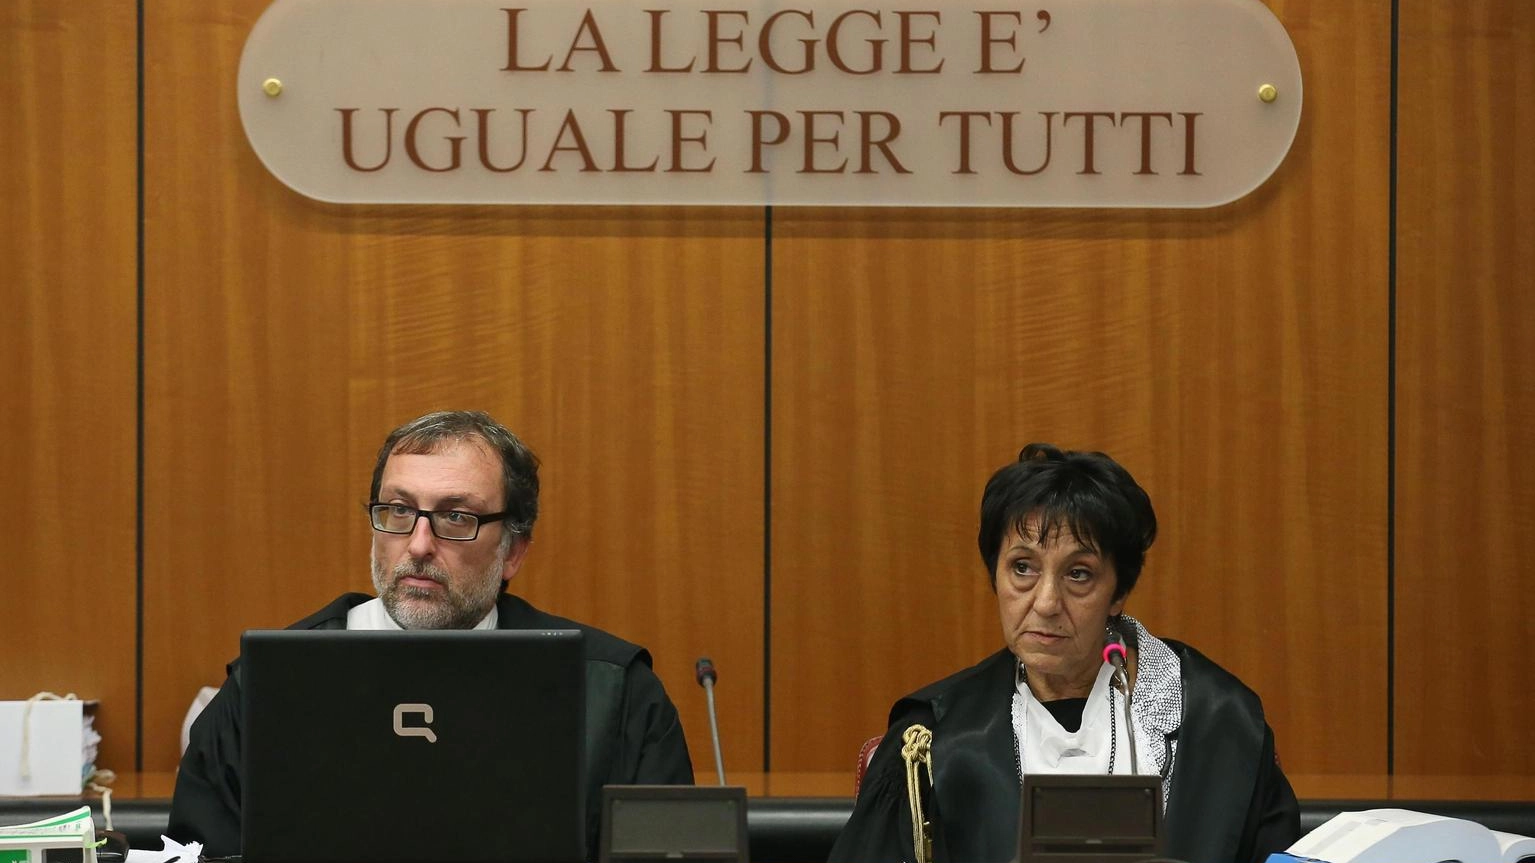 Istat, italiani soddisfatti della giustizia civile